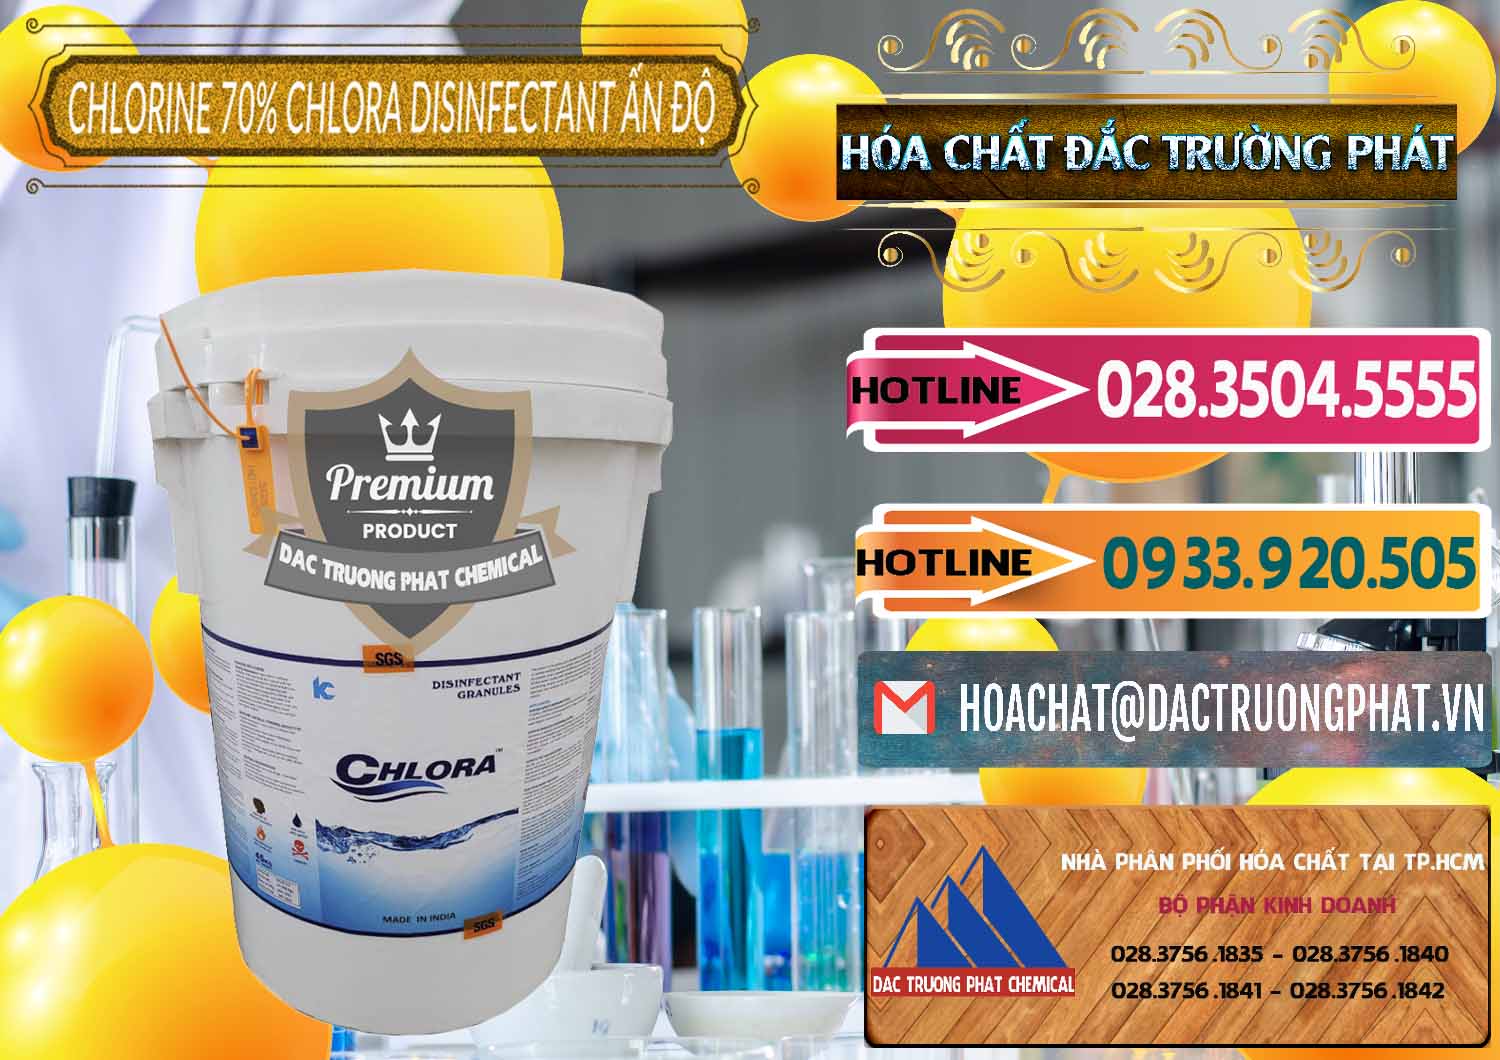 Nơi cung cấp và bán Chlorine – Clorin 70% Chlora Disinfectant Ấn Độ India - 0213 - Công ty cung cấp _ bán hóa chất tại TP.HCM - dactruongphat.vn